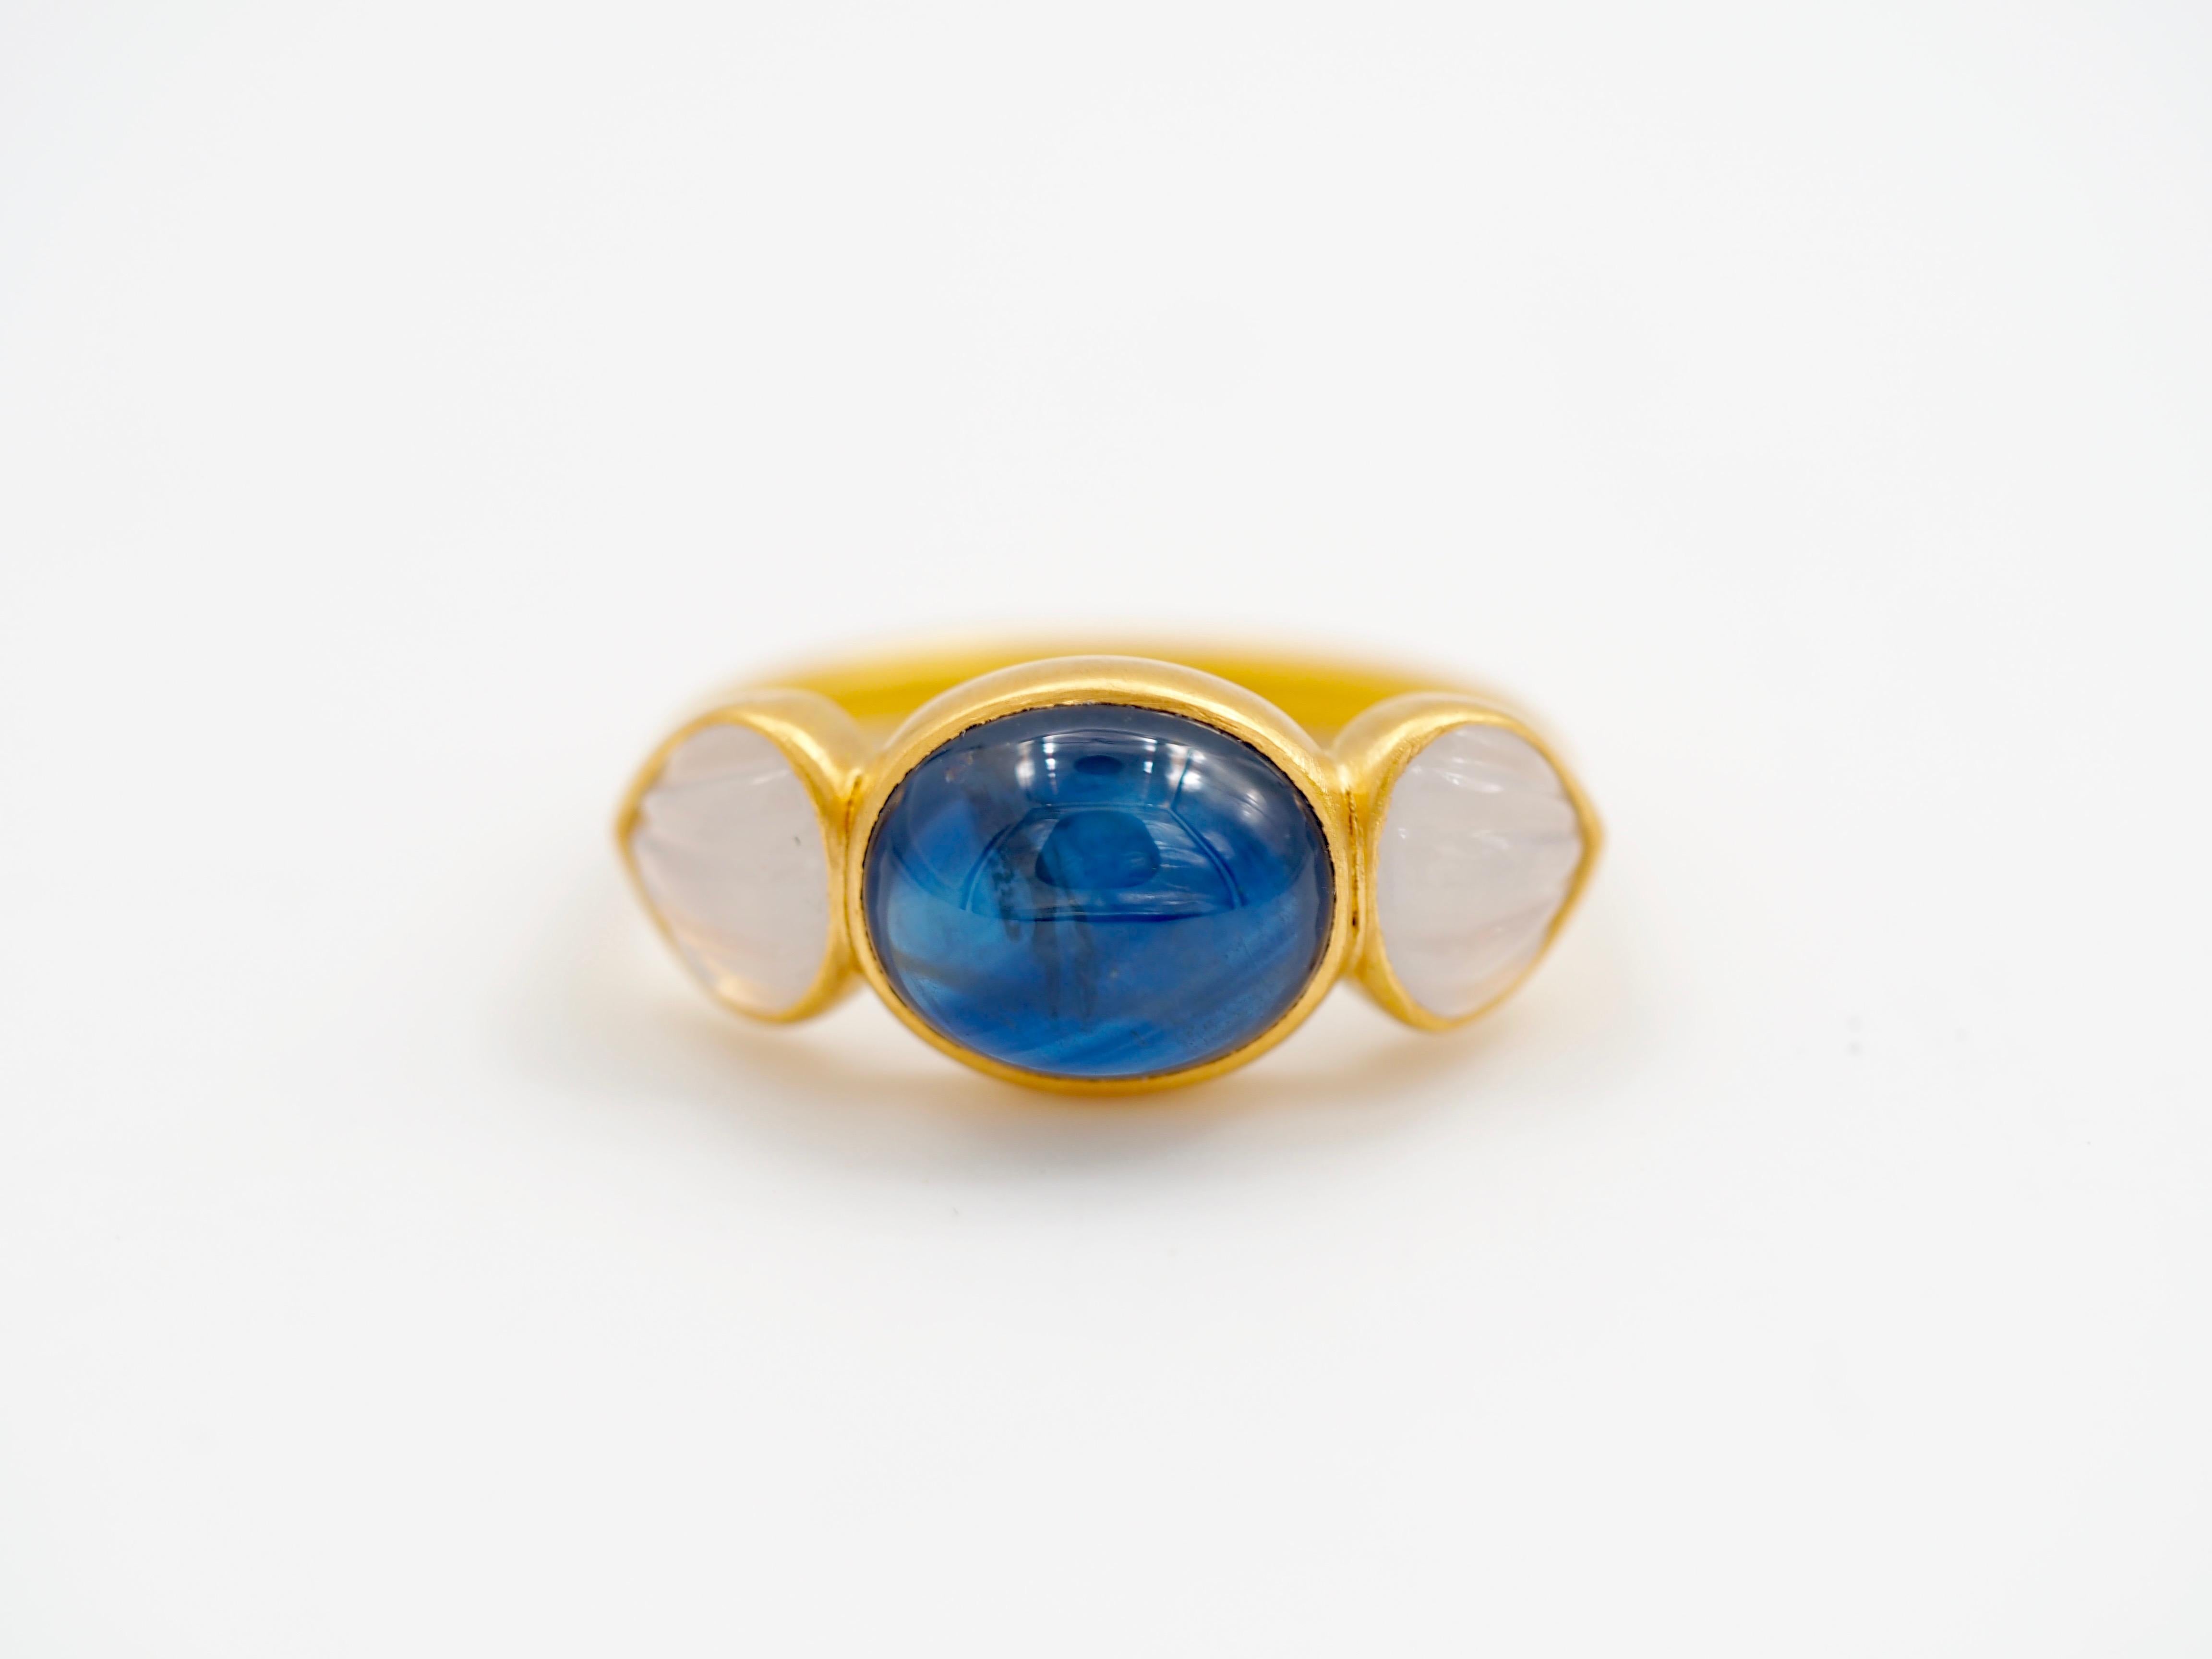 Dieser zarte Ring besteht aus einem tiefblauen natürlichen Saphir-Cabochon von 7,58 ct, umgeben von 2 weißen Chalcedonen, die wie Muscheln geschnitzt sind (insgesamt 1,87 ct). Der Saphir ist naturbelassen mit typischen Einschlüssen und zeigt